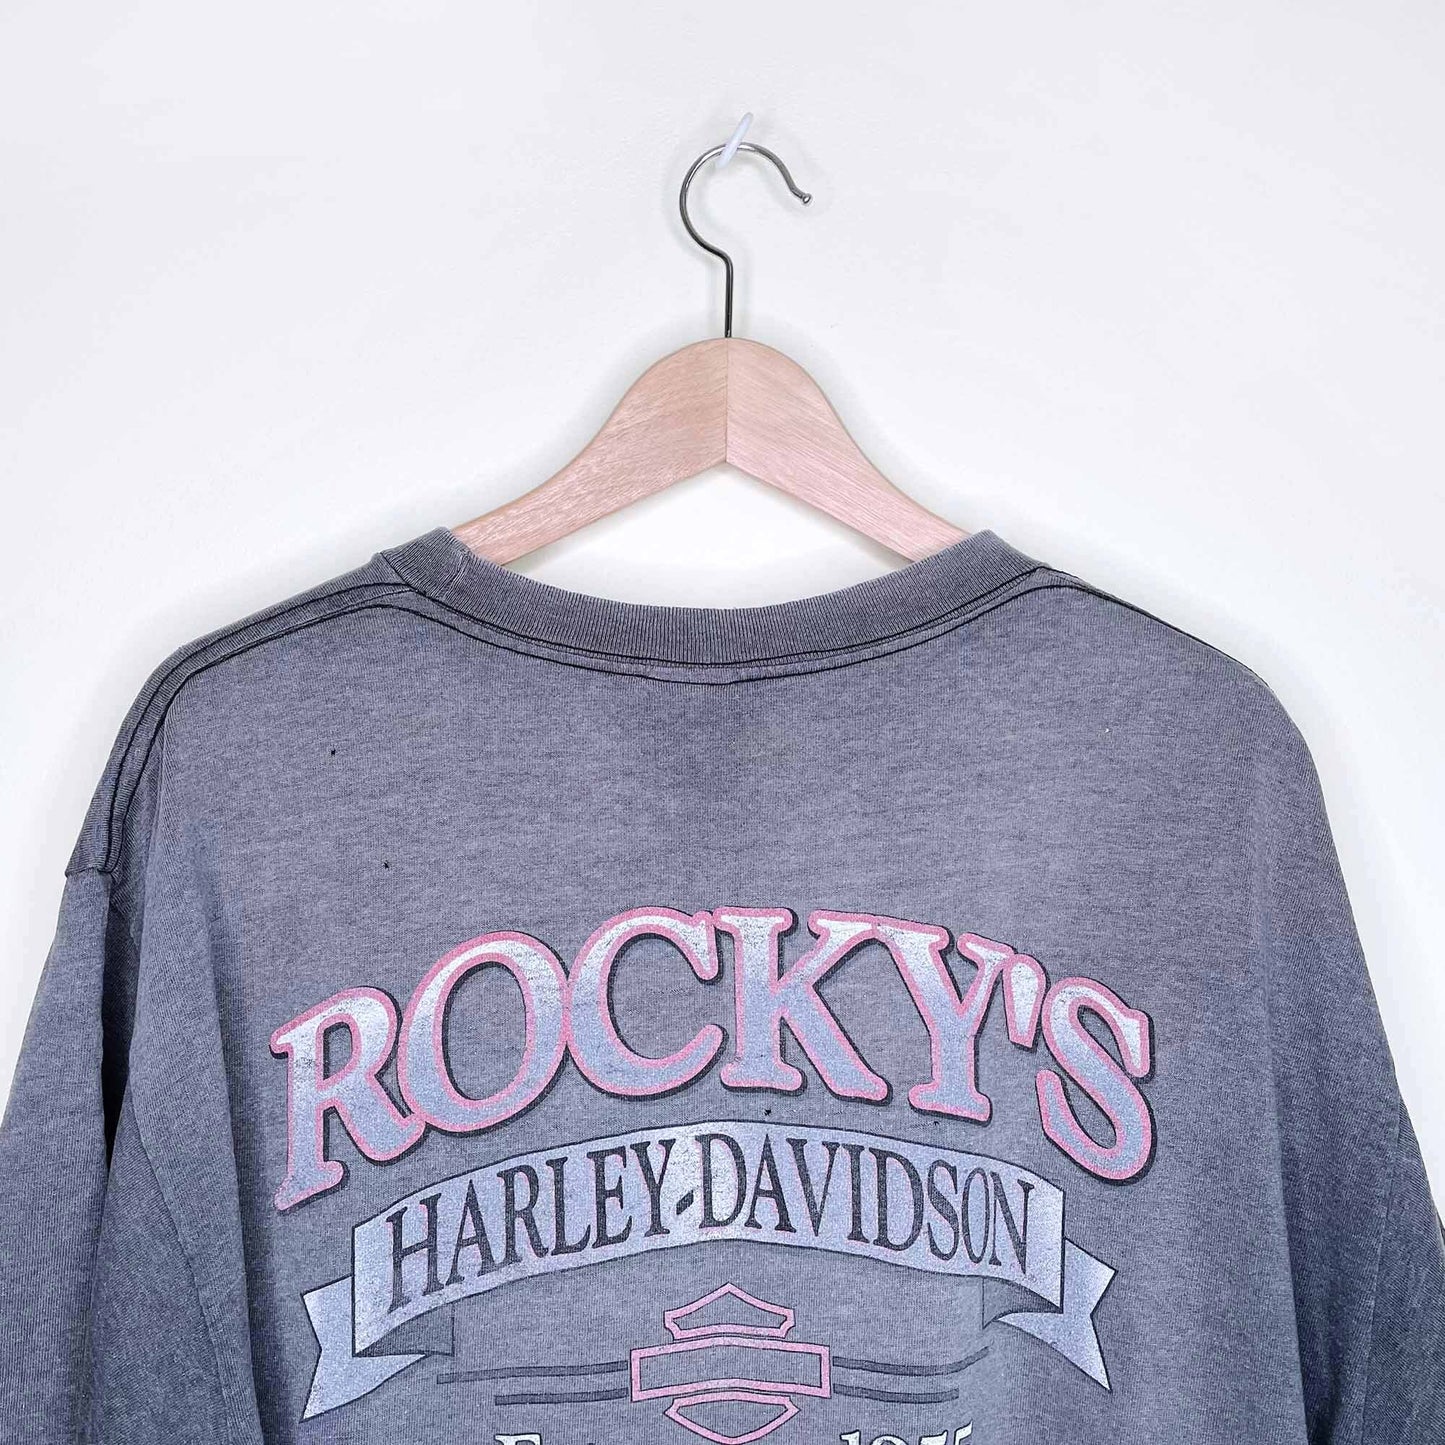 vintage harley davidson rocky's london t-shirt - size large